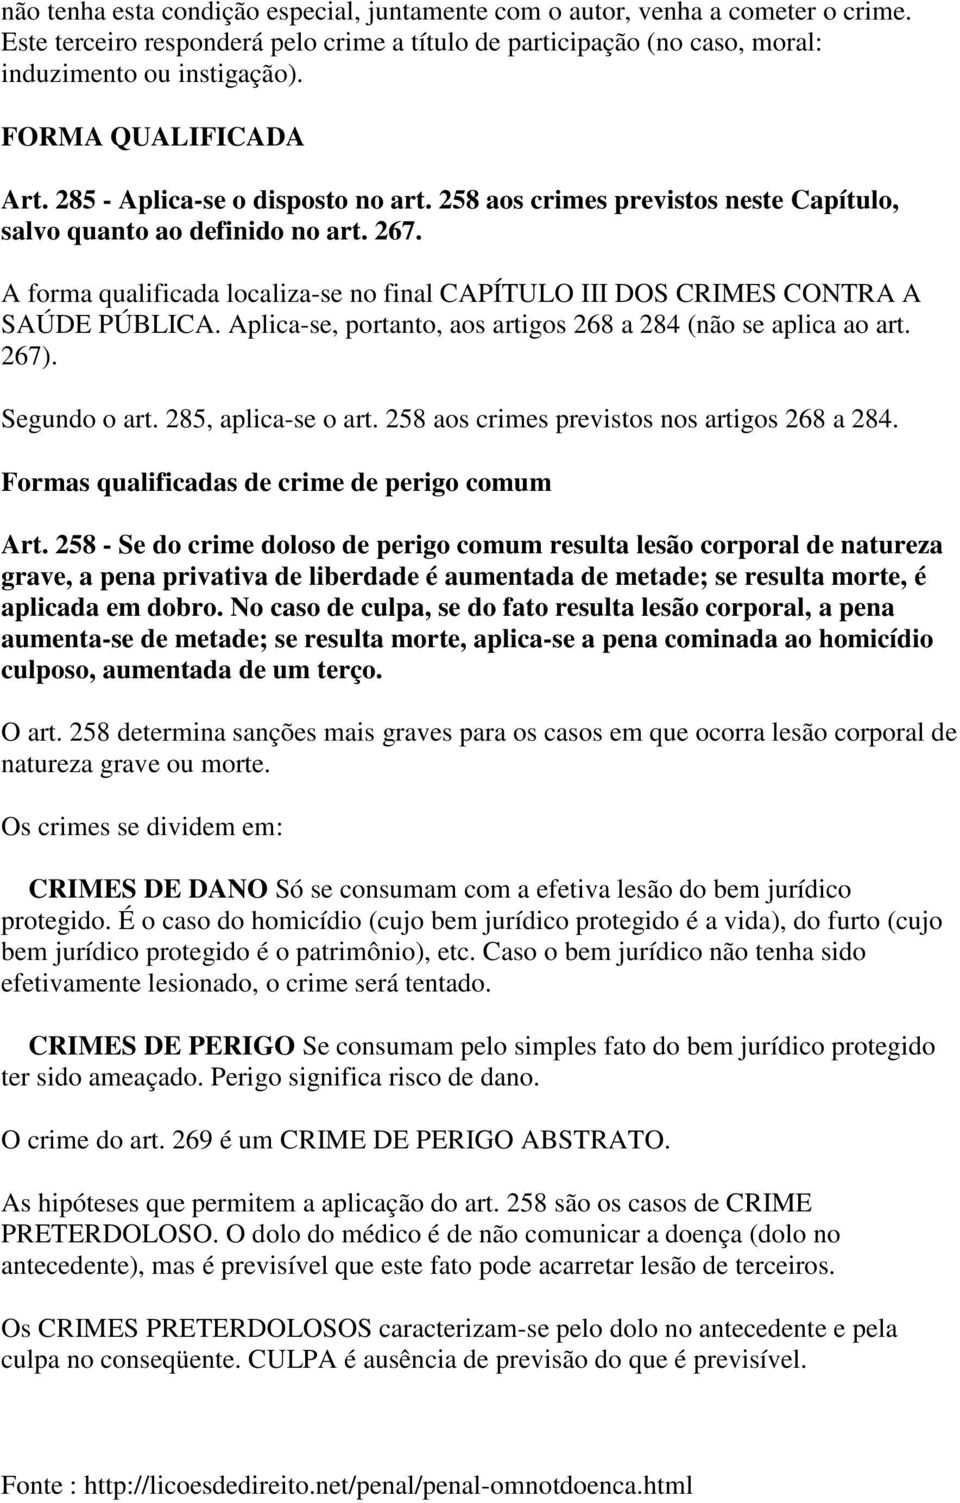 A forma qualificada localiza-se no final CAPÍTULO III DOS CRIMES CONTRA A SAÚDE PÚBLICA. Aplica-se, portanto, aos artigos 268 a 284 (não se aplica ao art. 267). Segundo o art. 285, aplica-se o art.